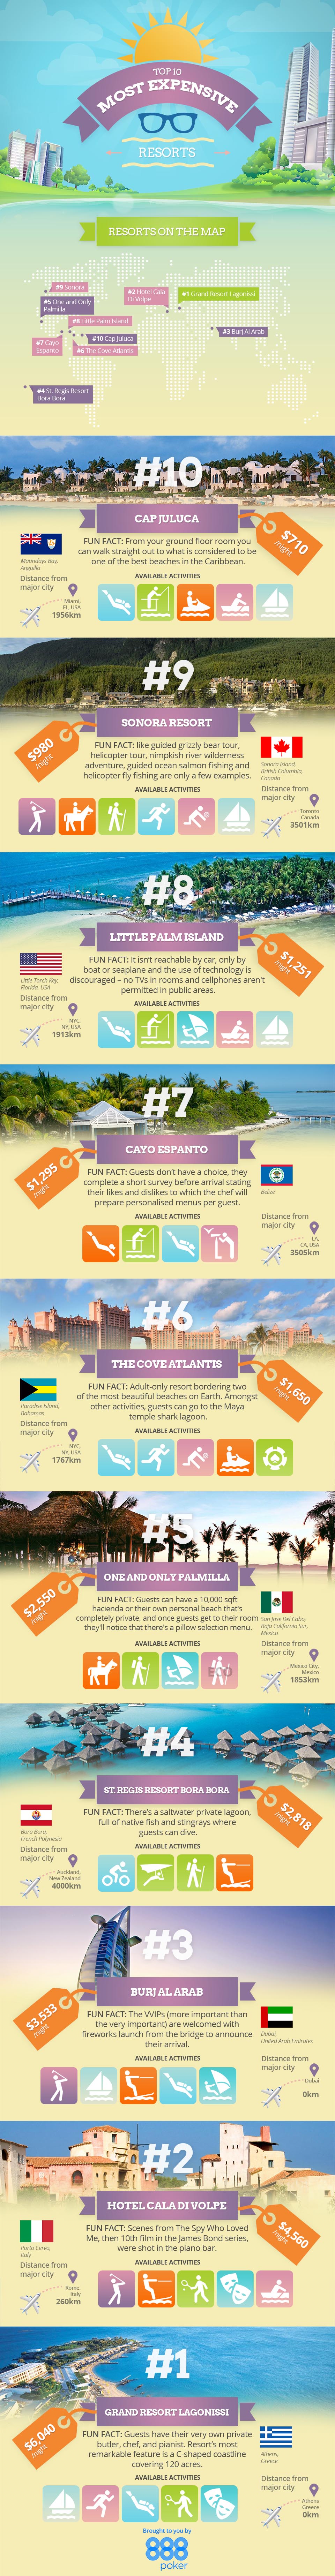 Top Ten Most Expensive Resorts